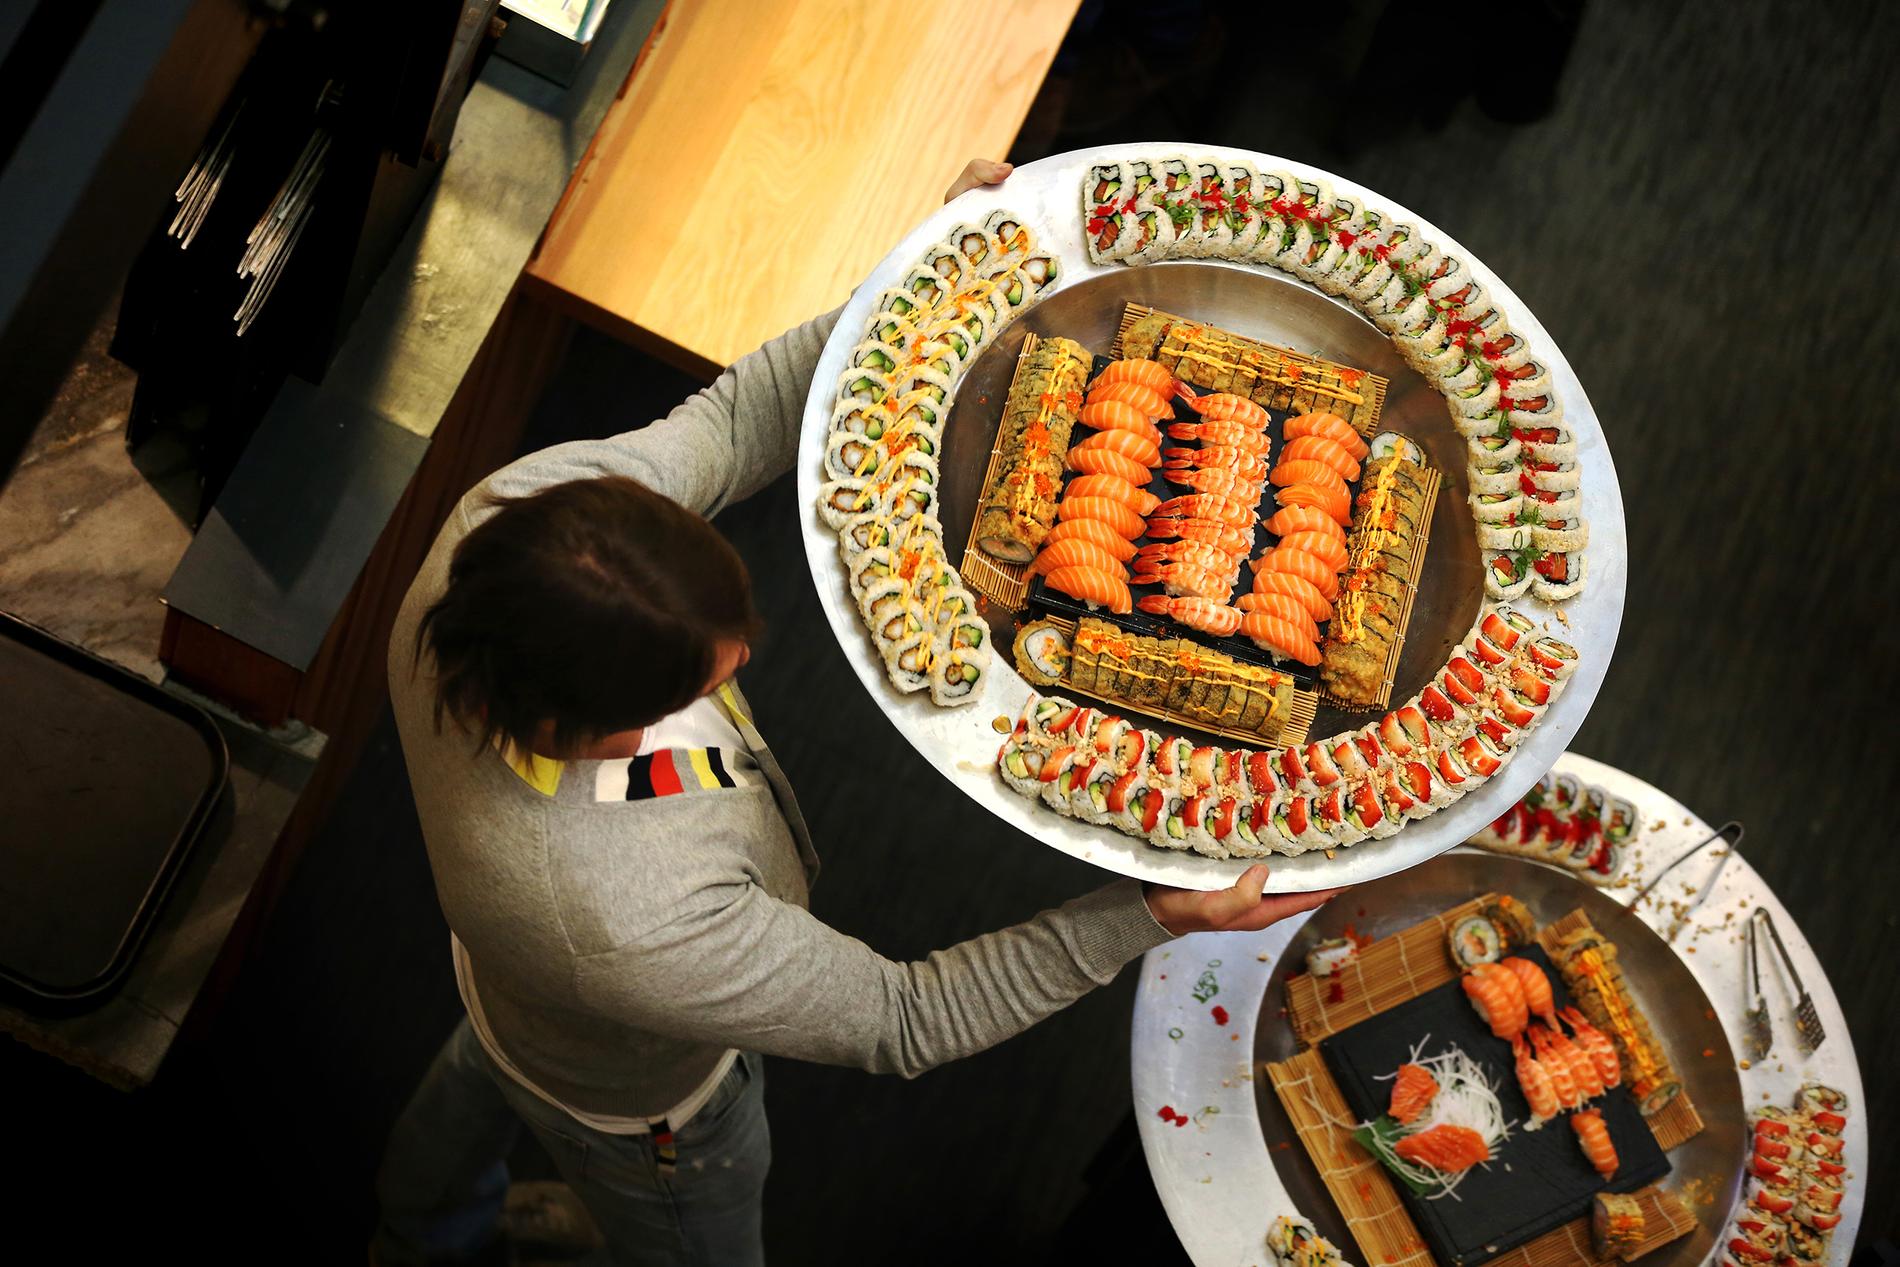 Sabrura spesialiserer seg på sushi- og sticks-buffet, men tilbyr også take away. I løpet av 2020 er planen å åpne åtte nye restauranter, deriblant i Stavanger. 